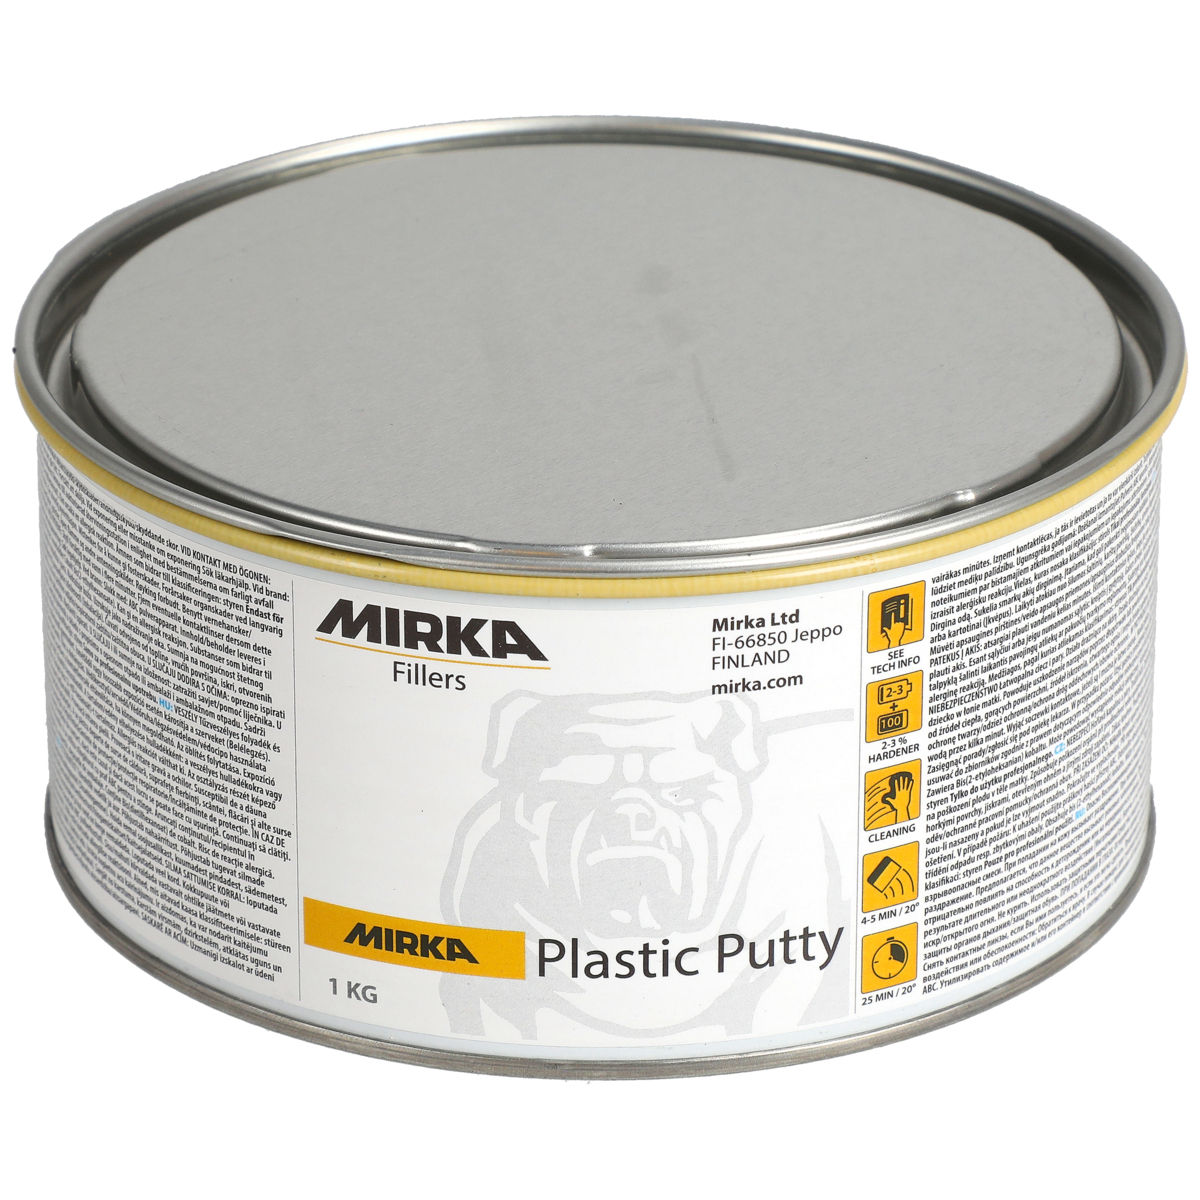 Mirka® Plastic Putty 1 kg - Mirka